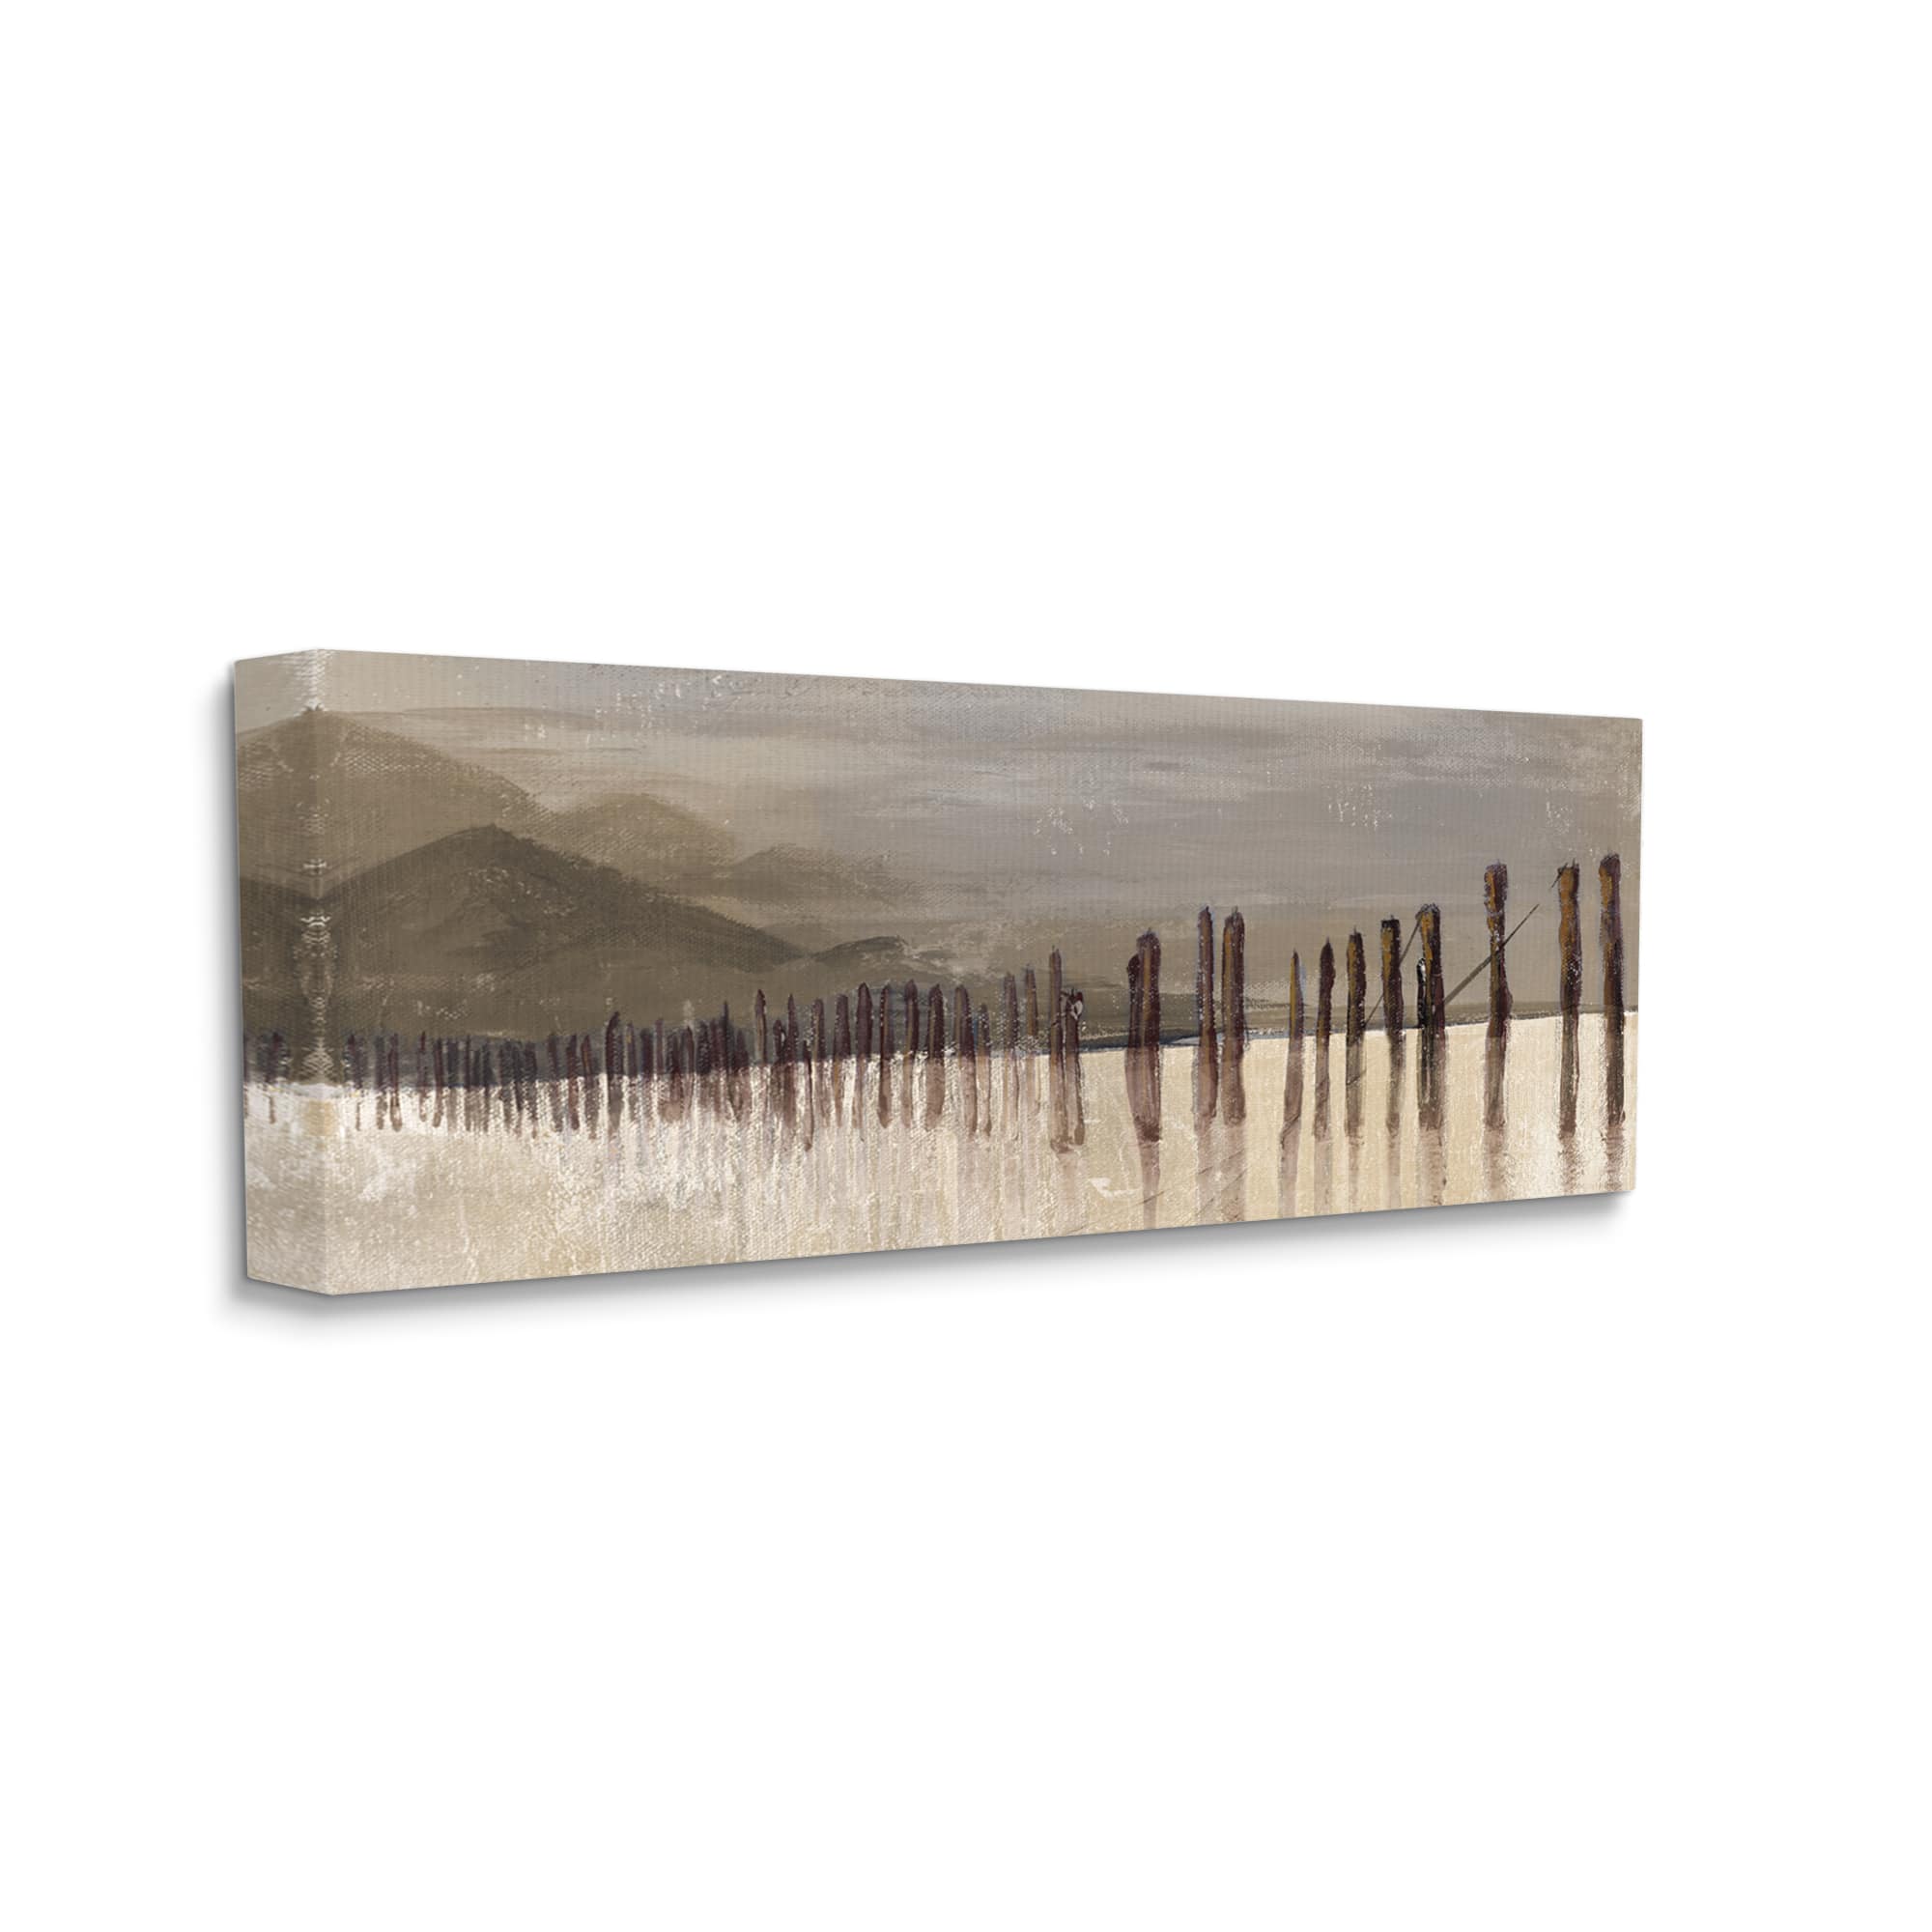 Stupell Industries Abstract Mountain Range Wooden Pillars Wall Art